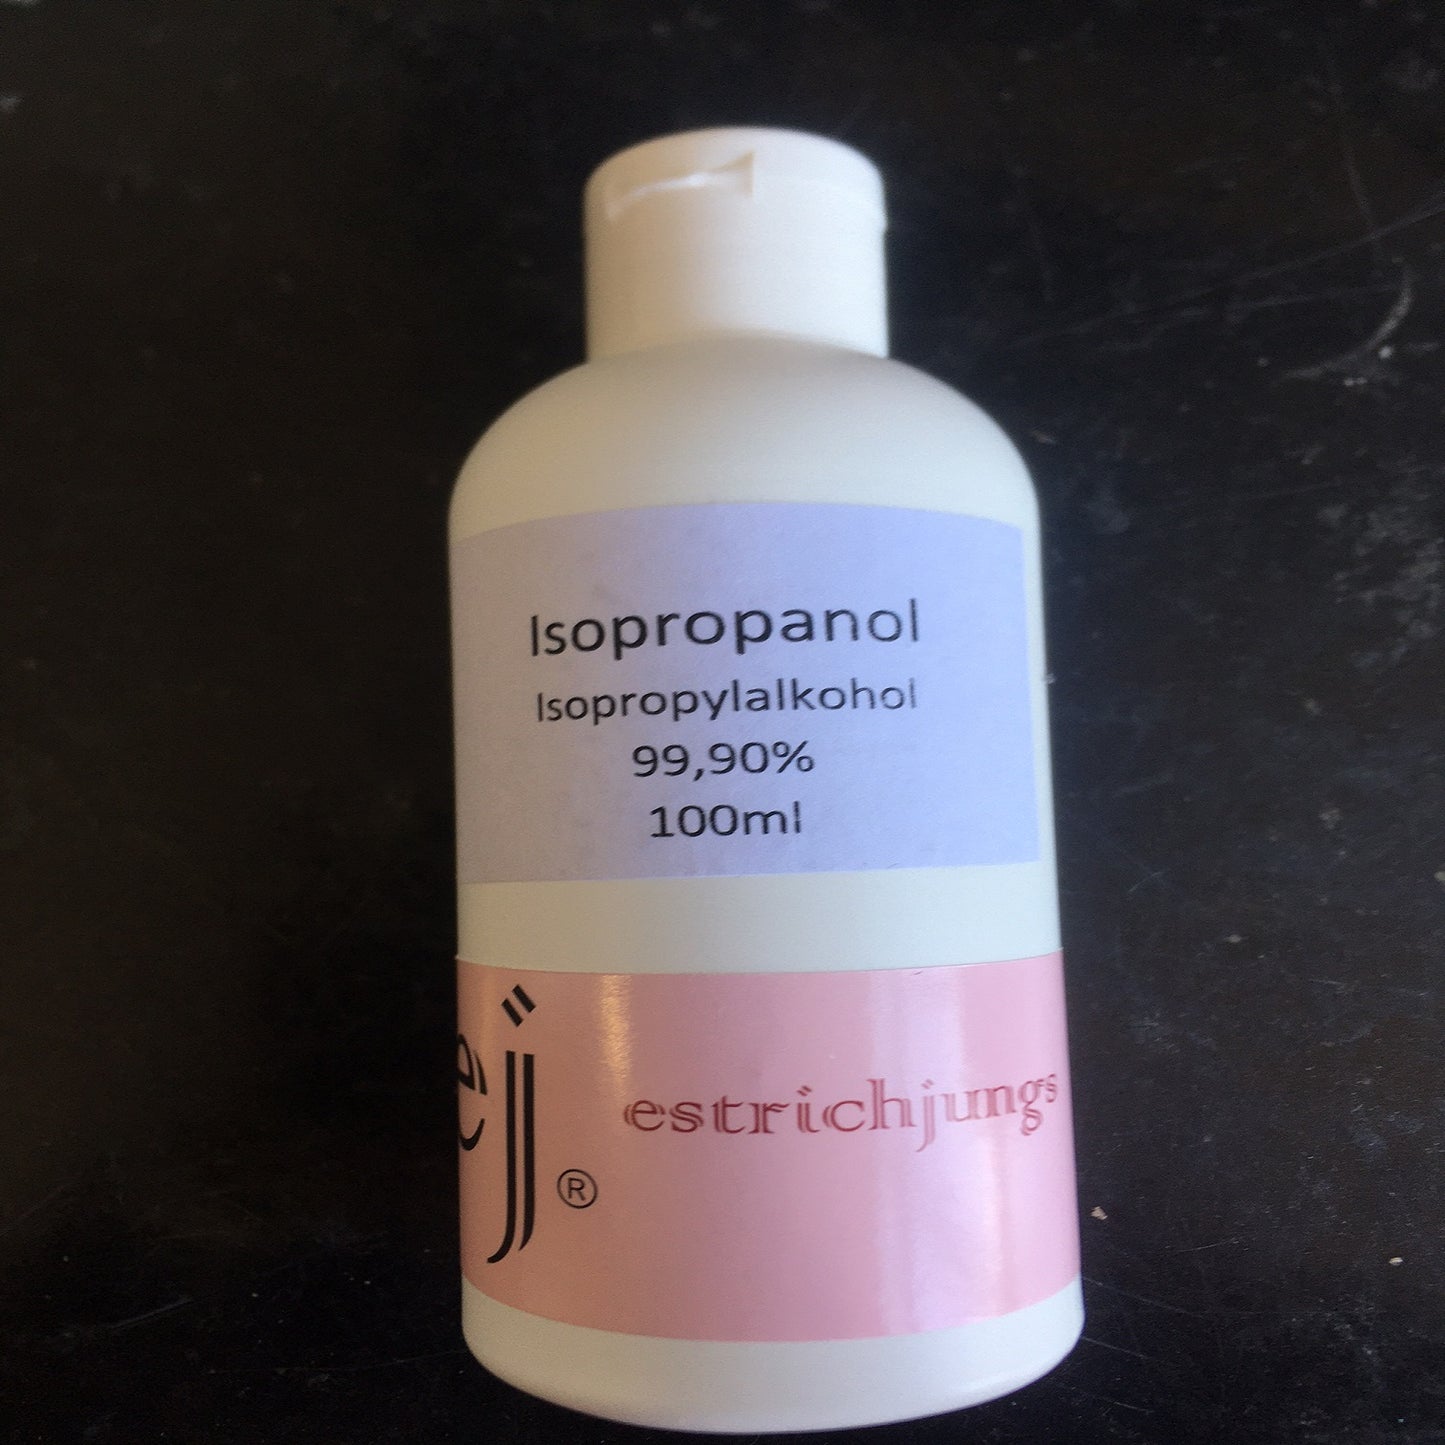 Isopropanol 100ml, Isopropylalkohol in kleiner Sprühflasche